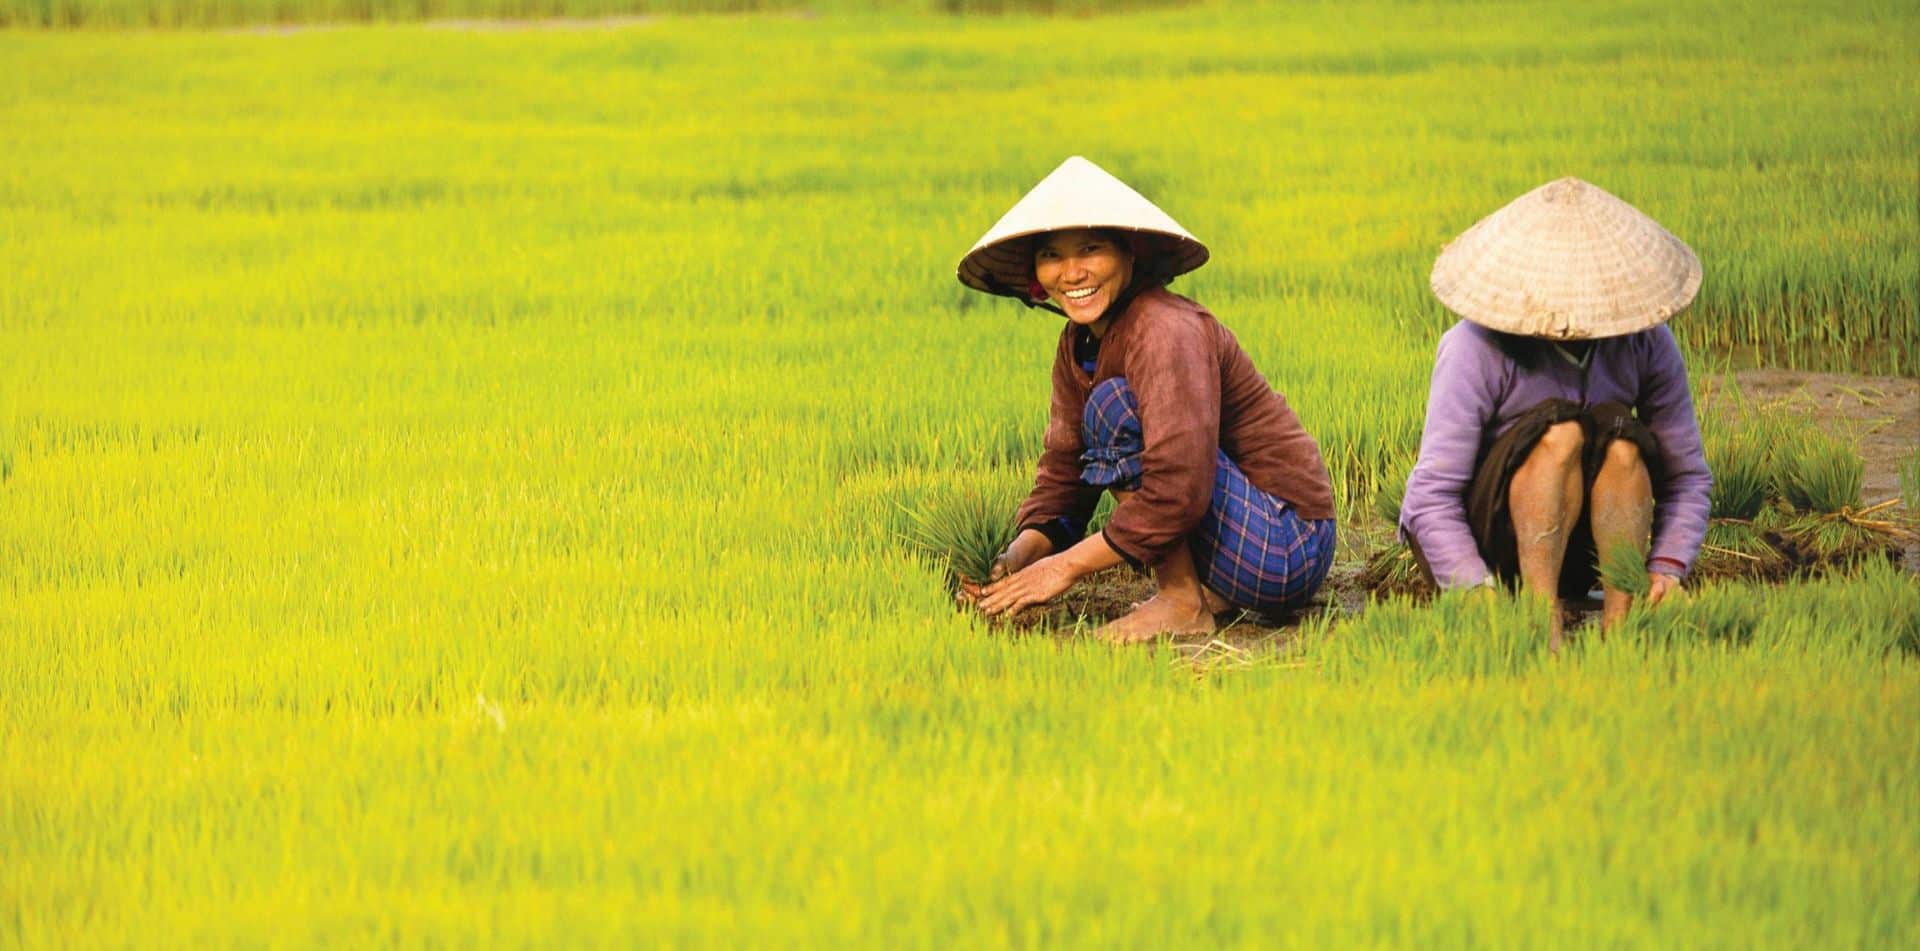 Woman working in a field in Vietnam